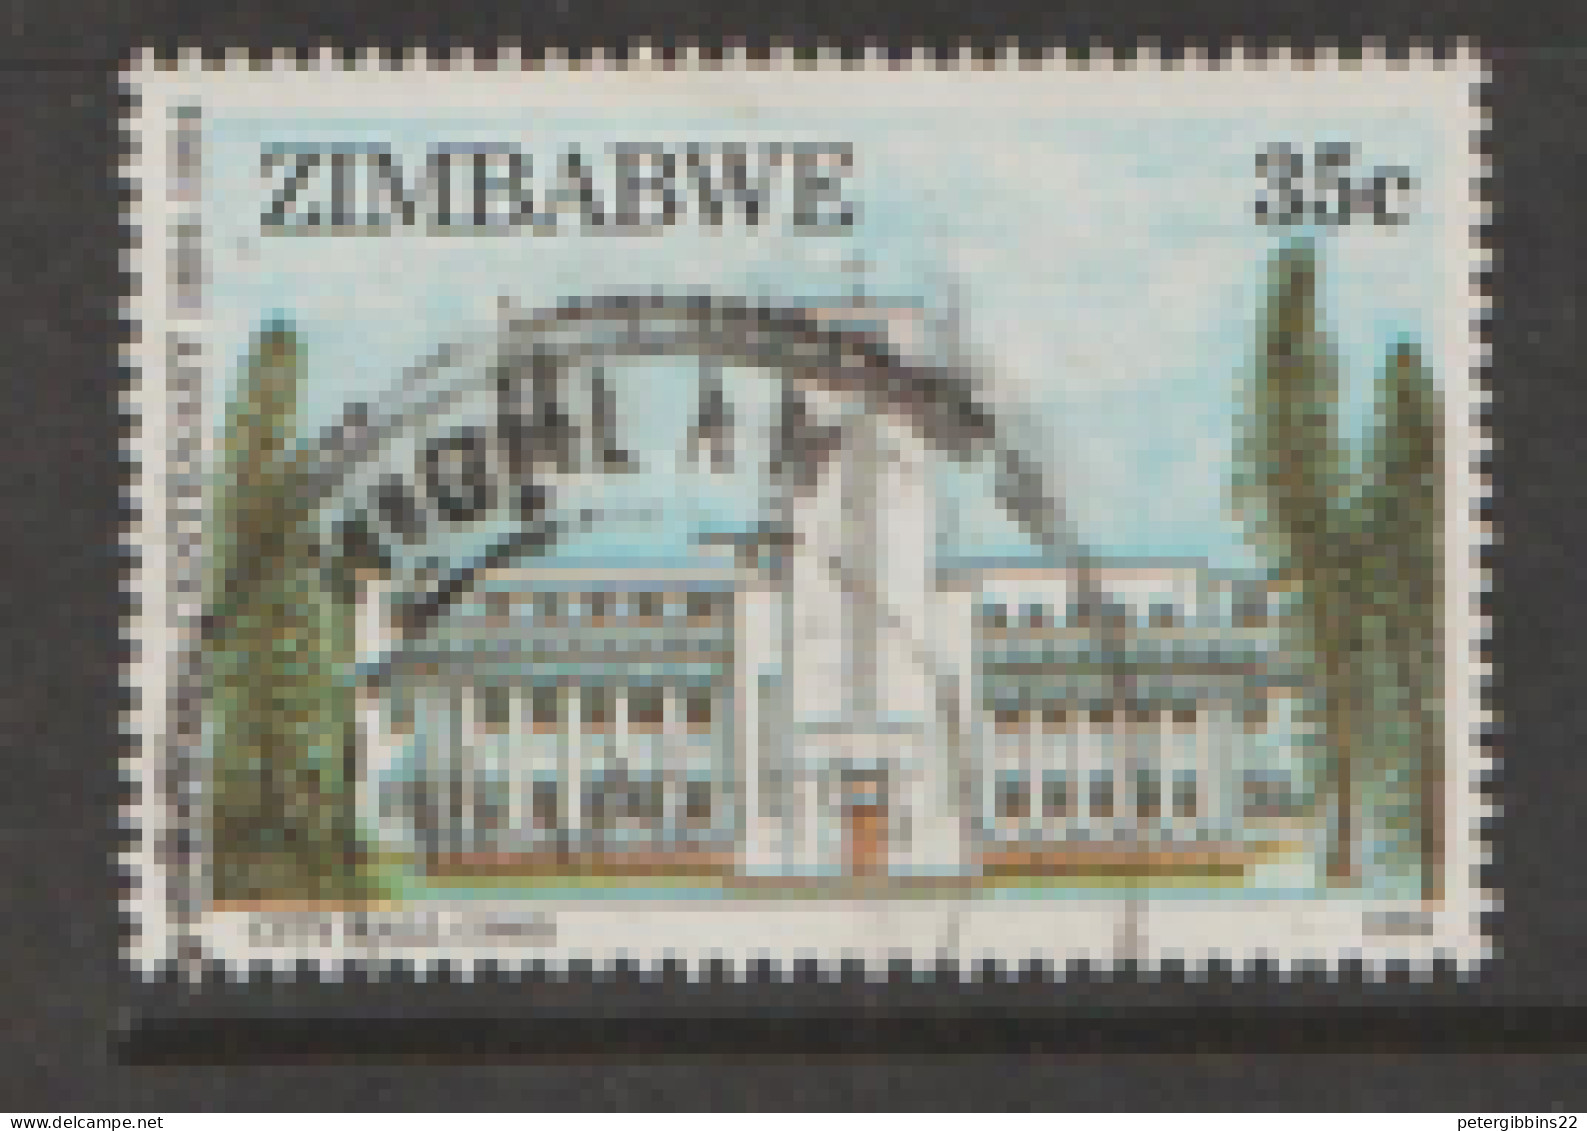 Zimbabwe  1994  SG 870  City Hall   Fine Used - Zimbabwe (1980-...)